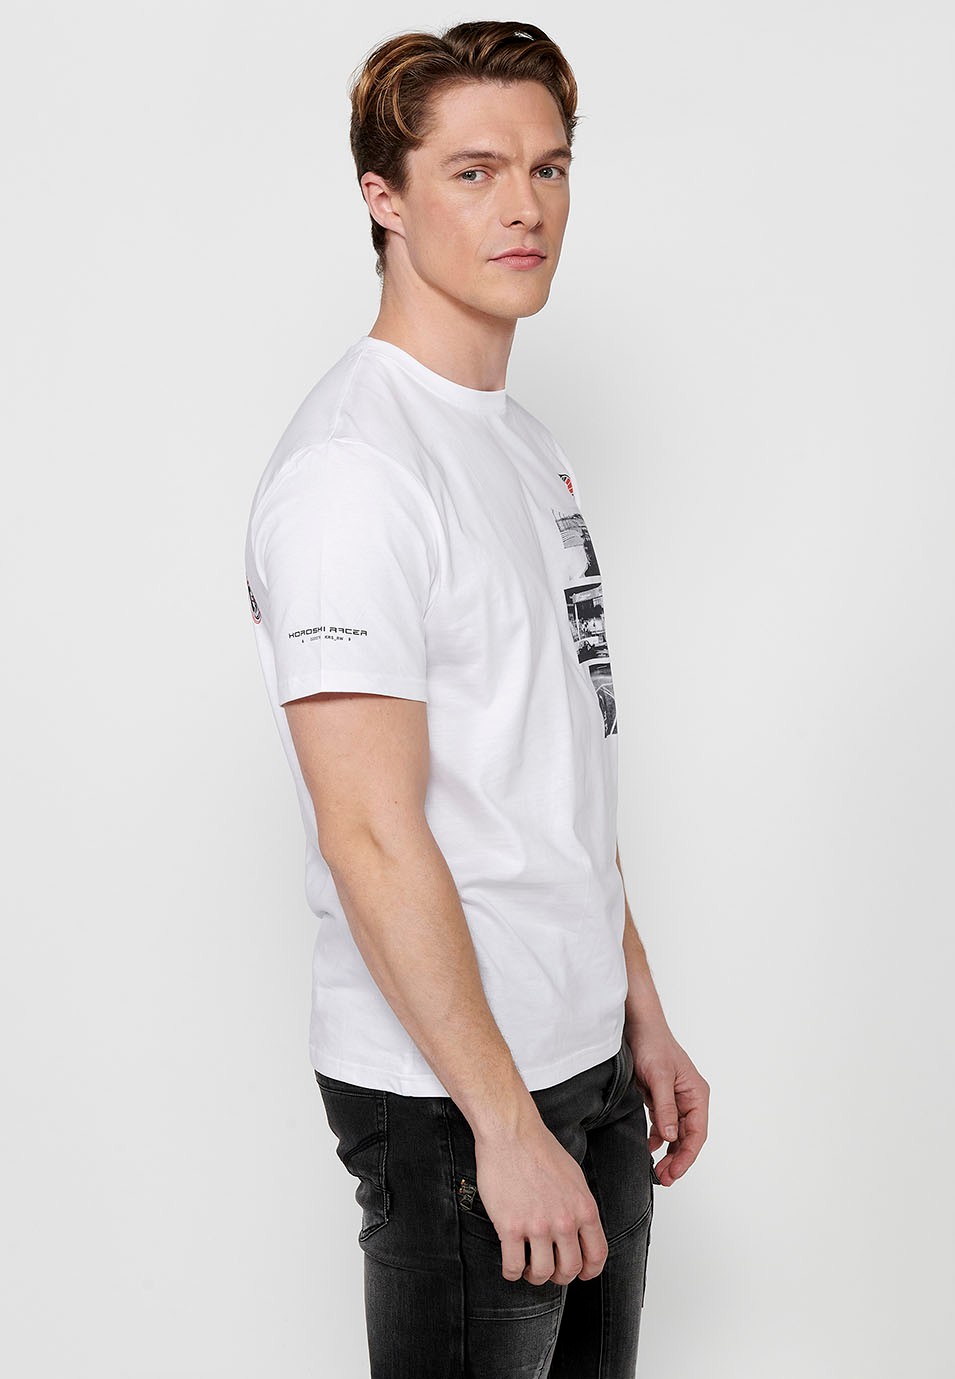 Camiseta de manga corta de algodón, estampado pecho multicolor, color blanco para hombre 2